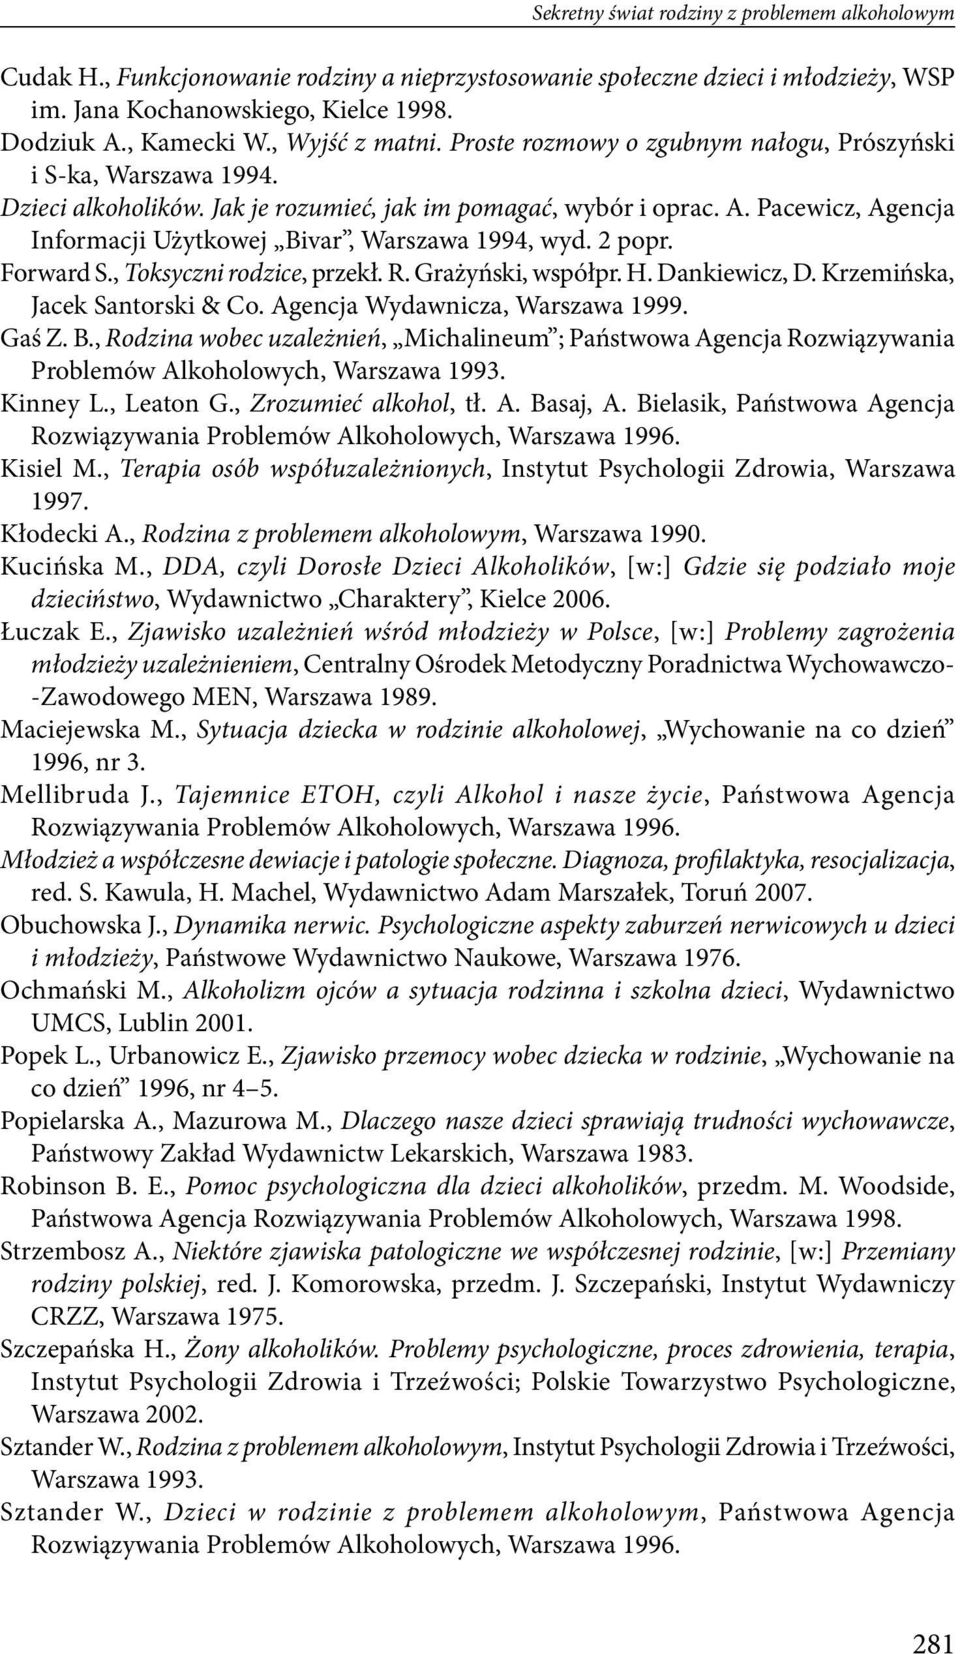 Pacewicz, Agencja Informacji Użytkowej Bivar, Warszawa 1994, wyd. 2 popr. Forward S., Toksyczni rodzice, przekł. R. Grażyński, współpr. H. Dankiewicz, D. Krzemińska, Jacek Santorski & Co.